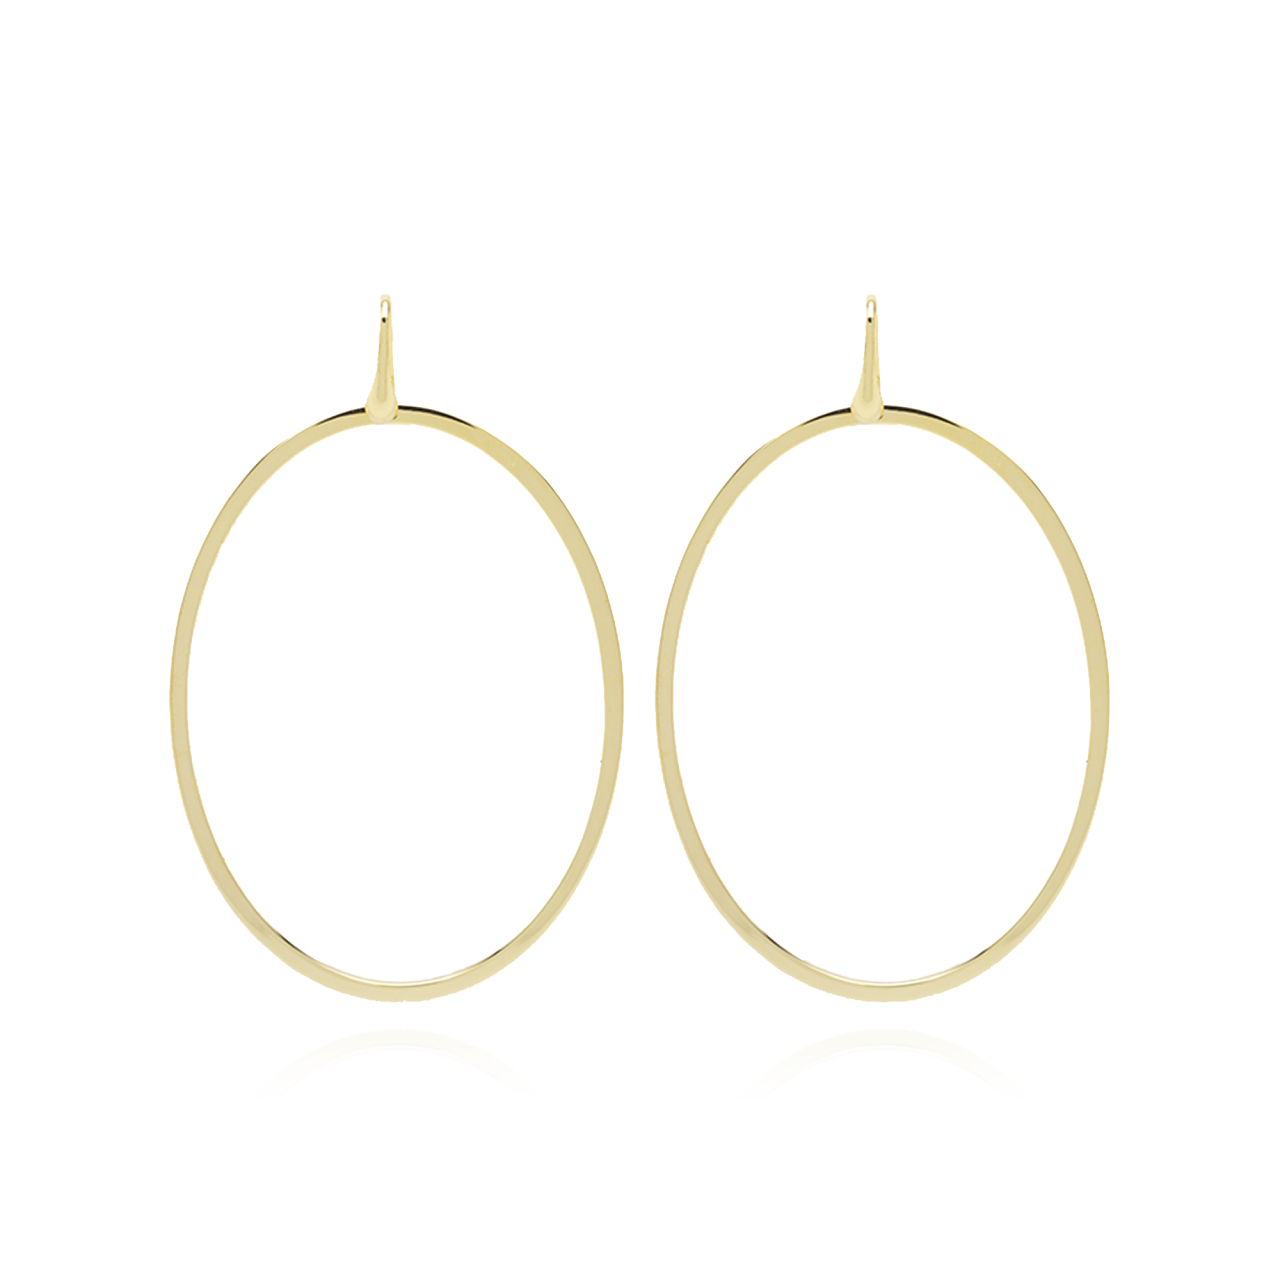 Classic oval earrings